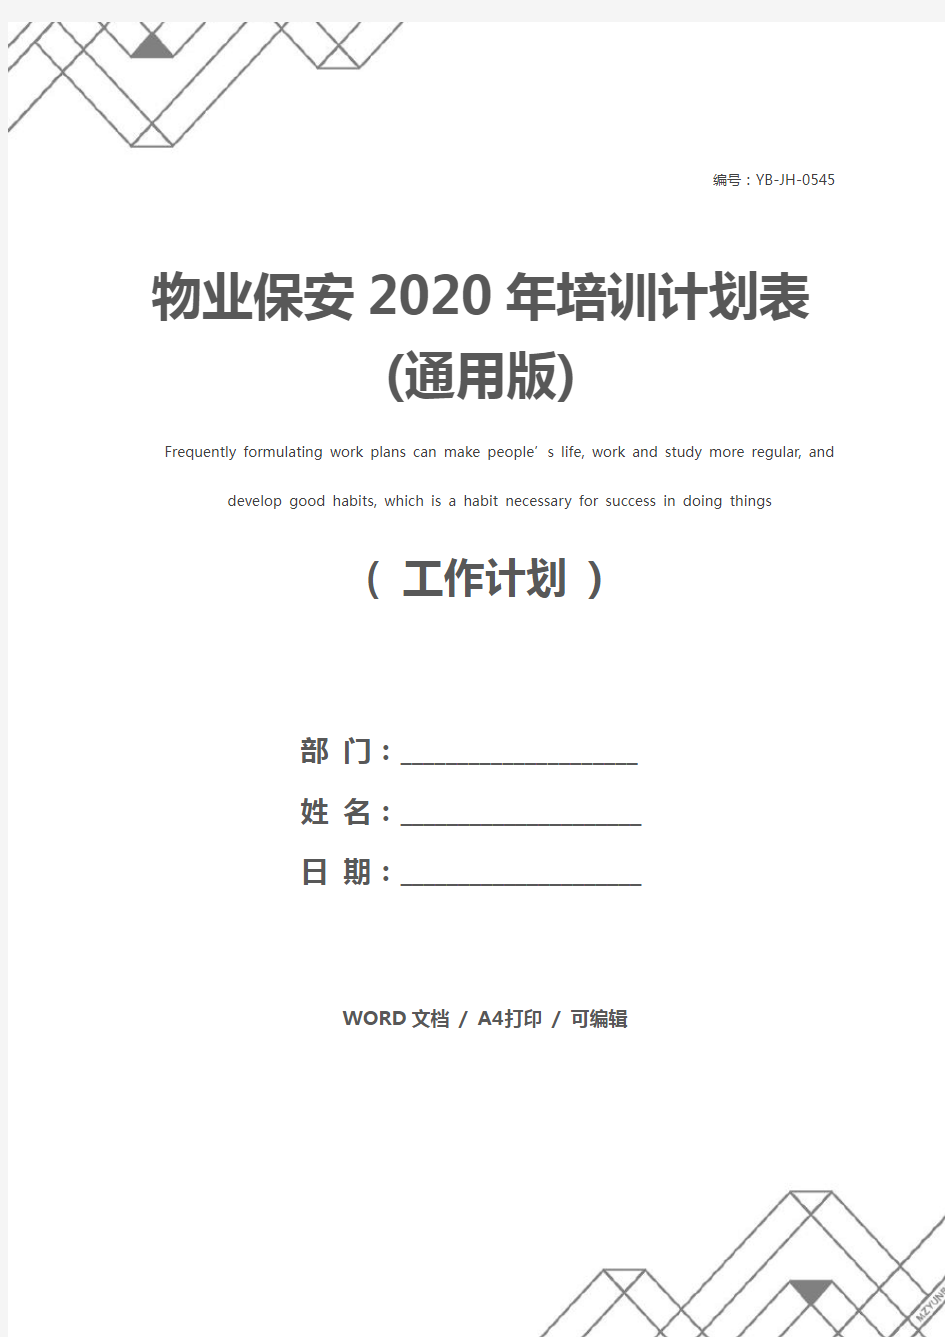 物业保安2020年培训计划表(通用版)